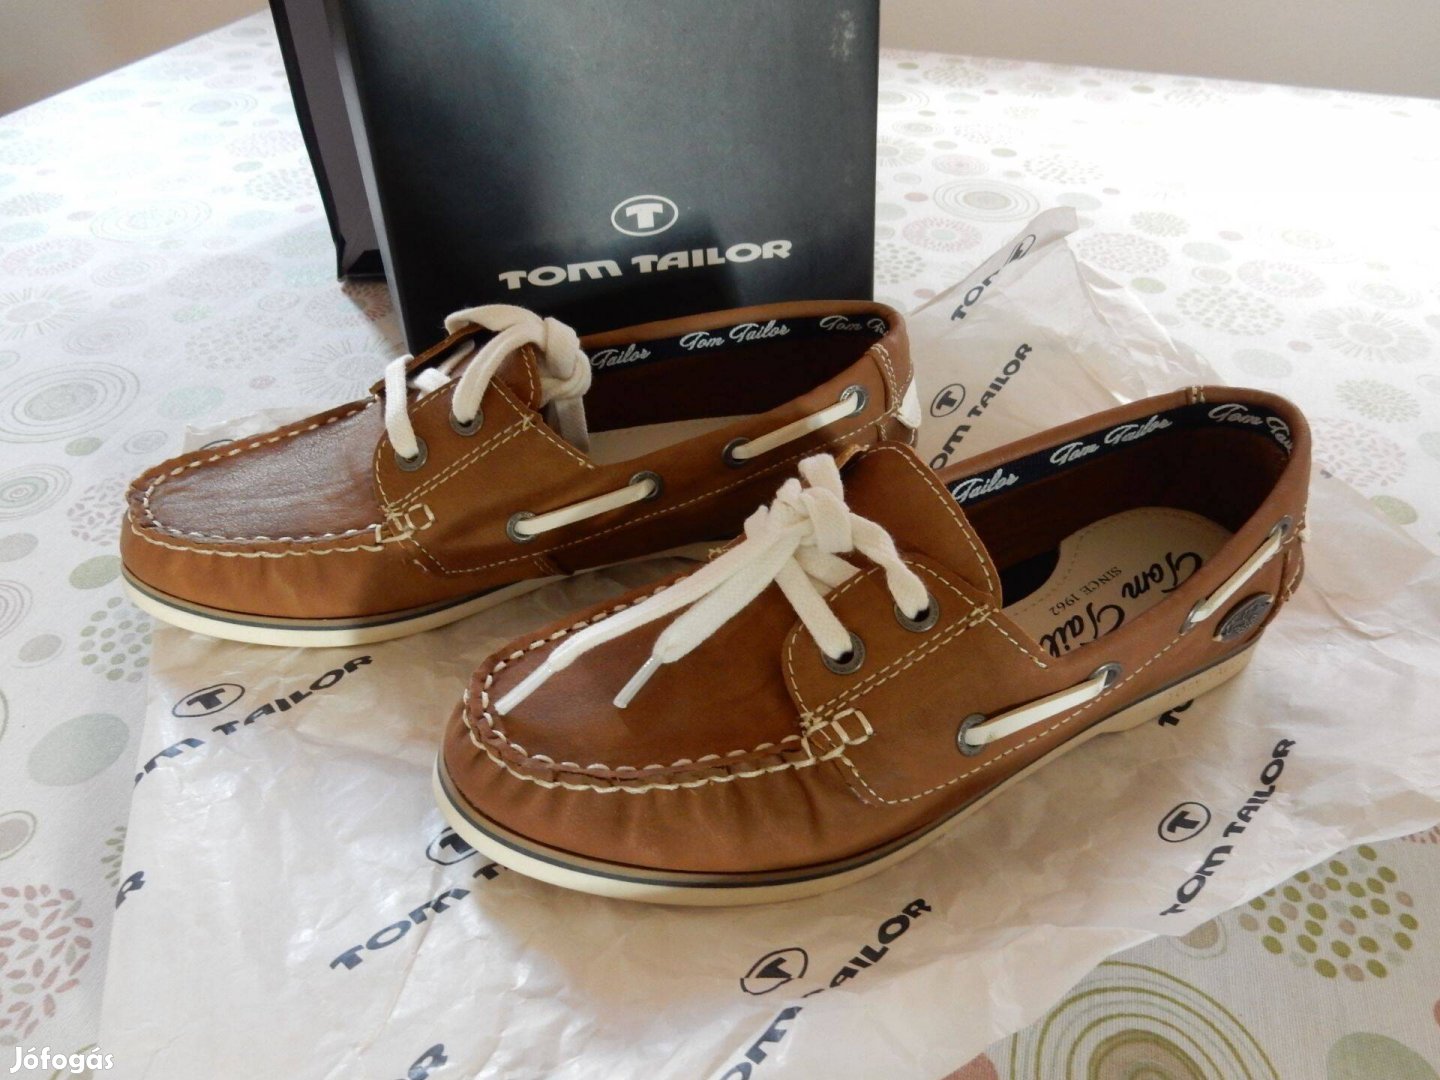 Eladó Tom Taylor női cipő új